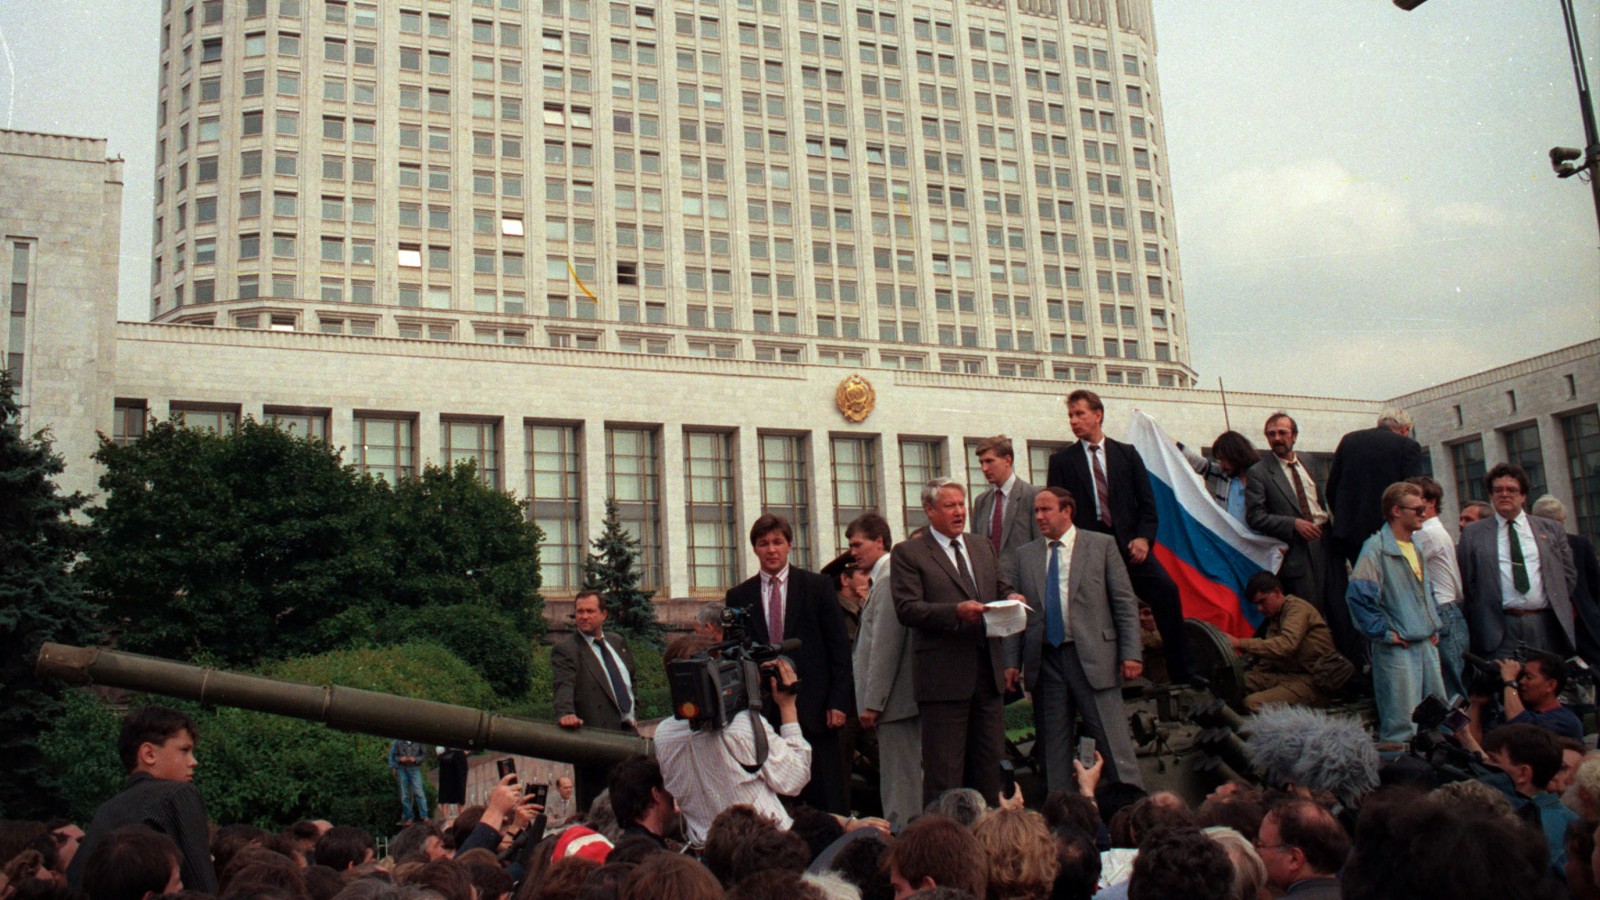 נשיא רוסיה בוריס ילצין נואם על טנק מול הפרלמנט הרוסי בסוף הפוטש הכושל באוגוסט 1991 (צילום ארכיון: AP)